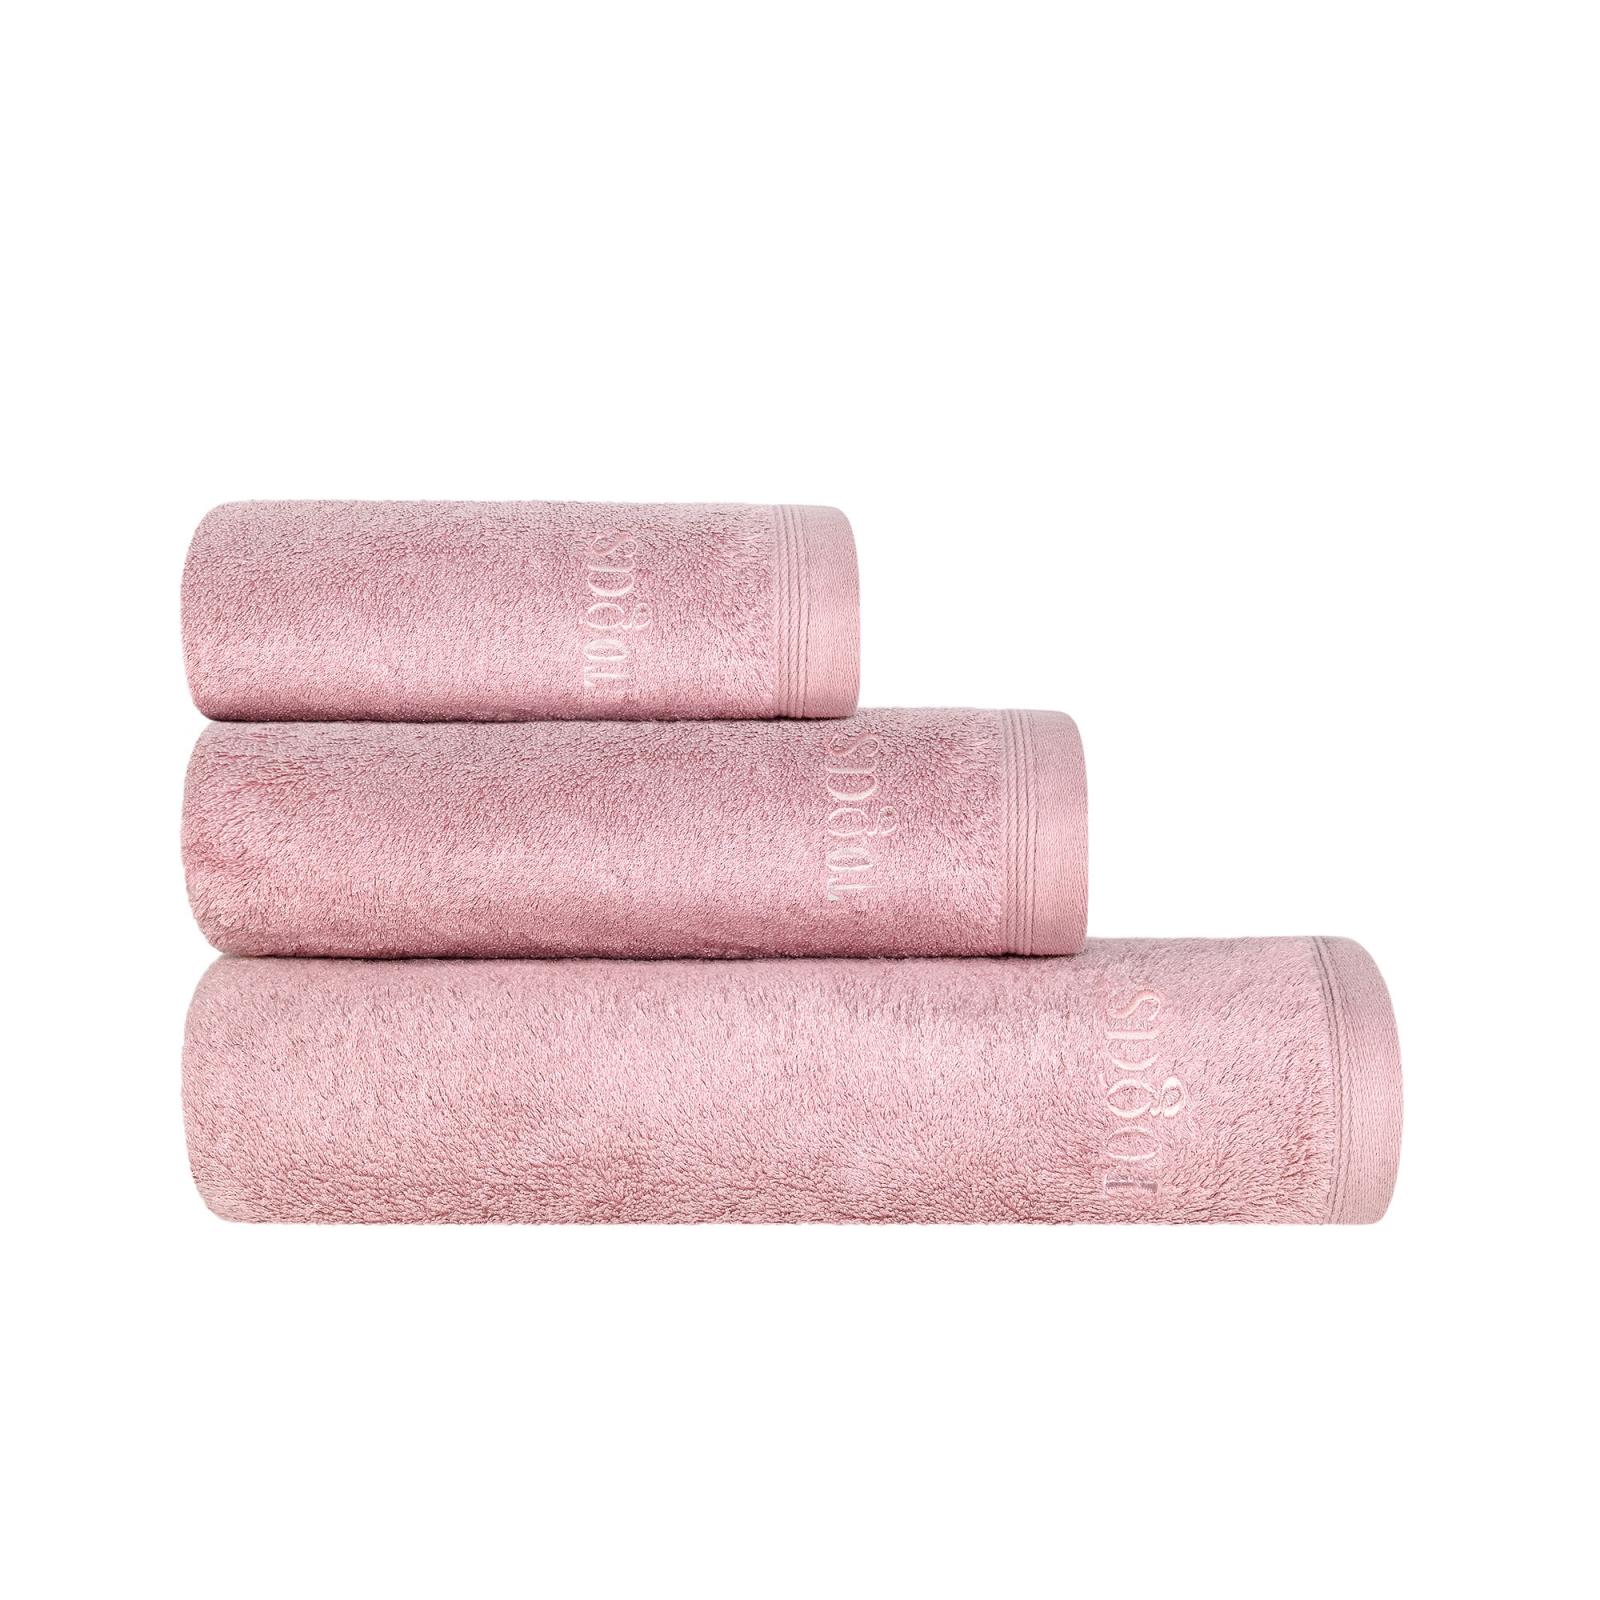 Полотенце Togas Пуатье розовое 70х140 см (10.00.01.1046) полотенце togas миа бел экру 70х140